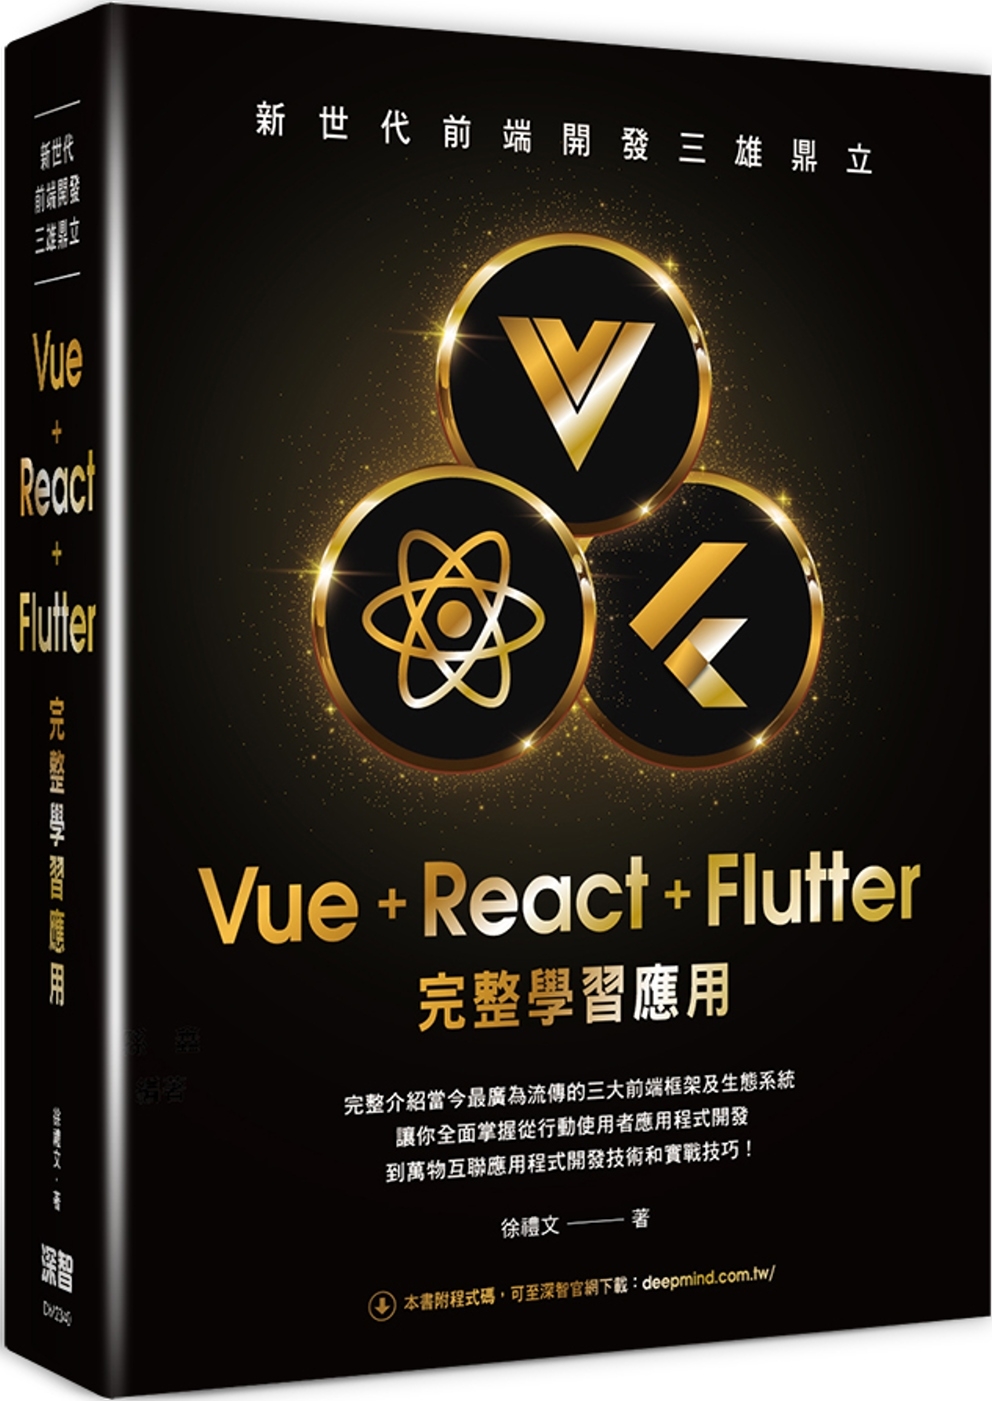 新世代前端開發三雄鼎立 - Vue+React+Flutter完整學習應用